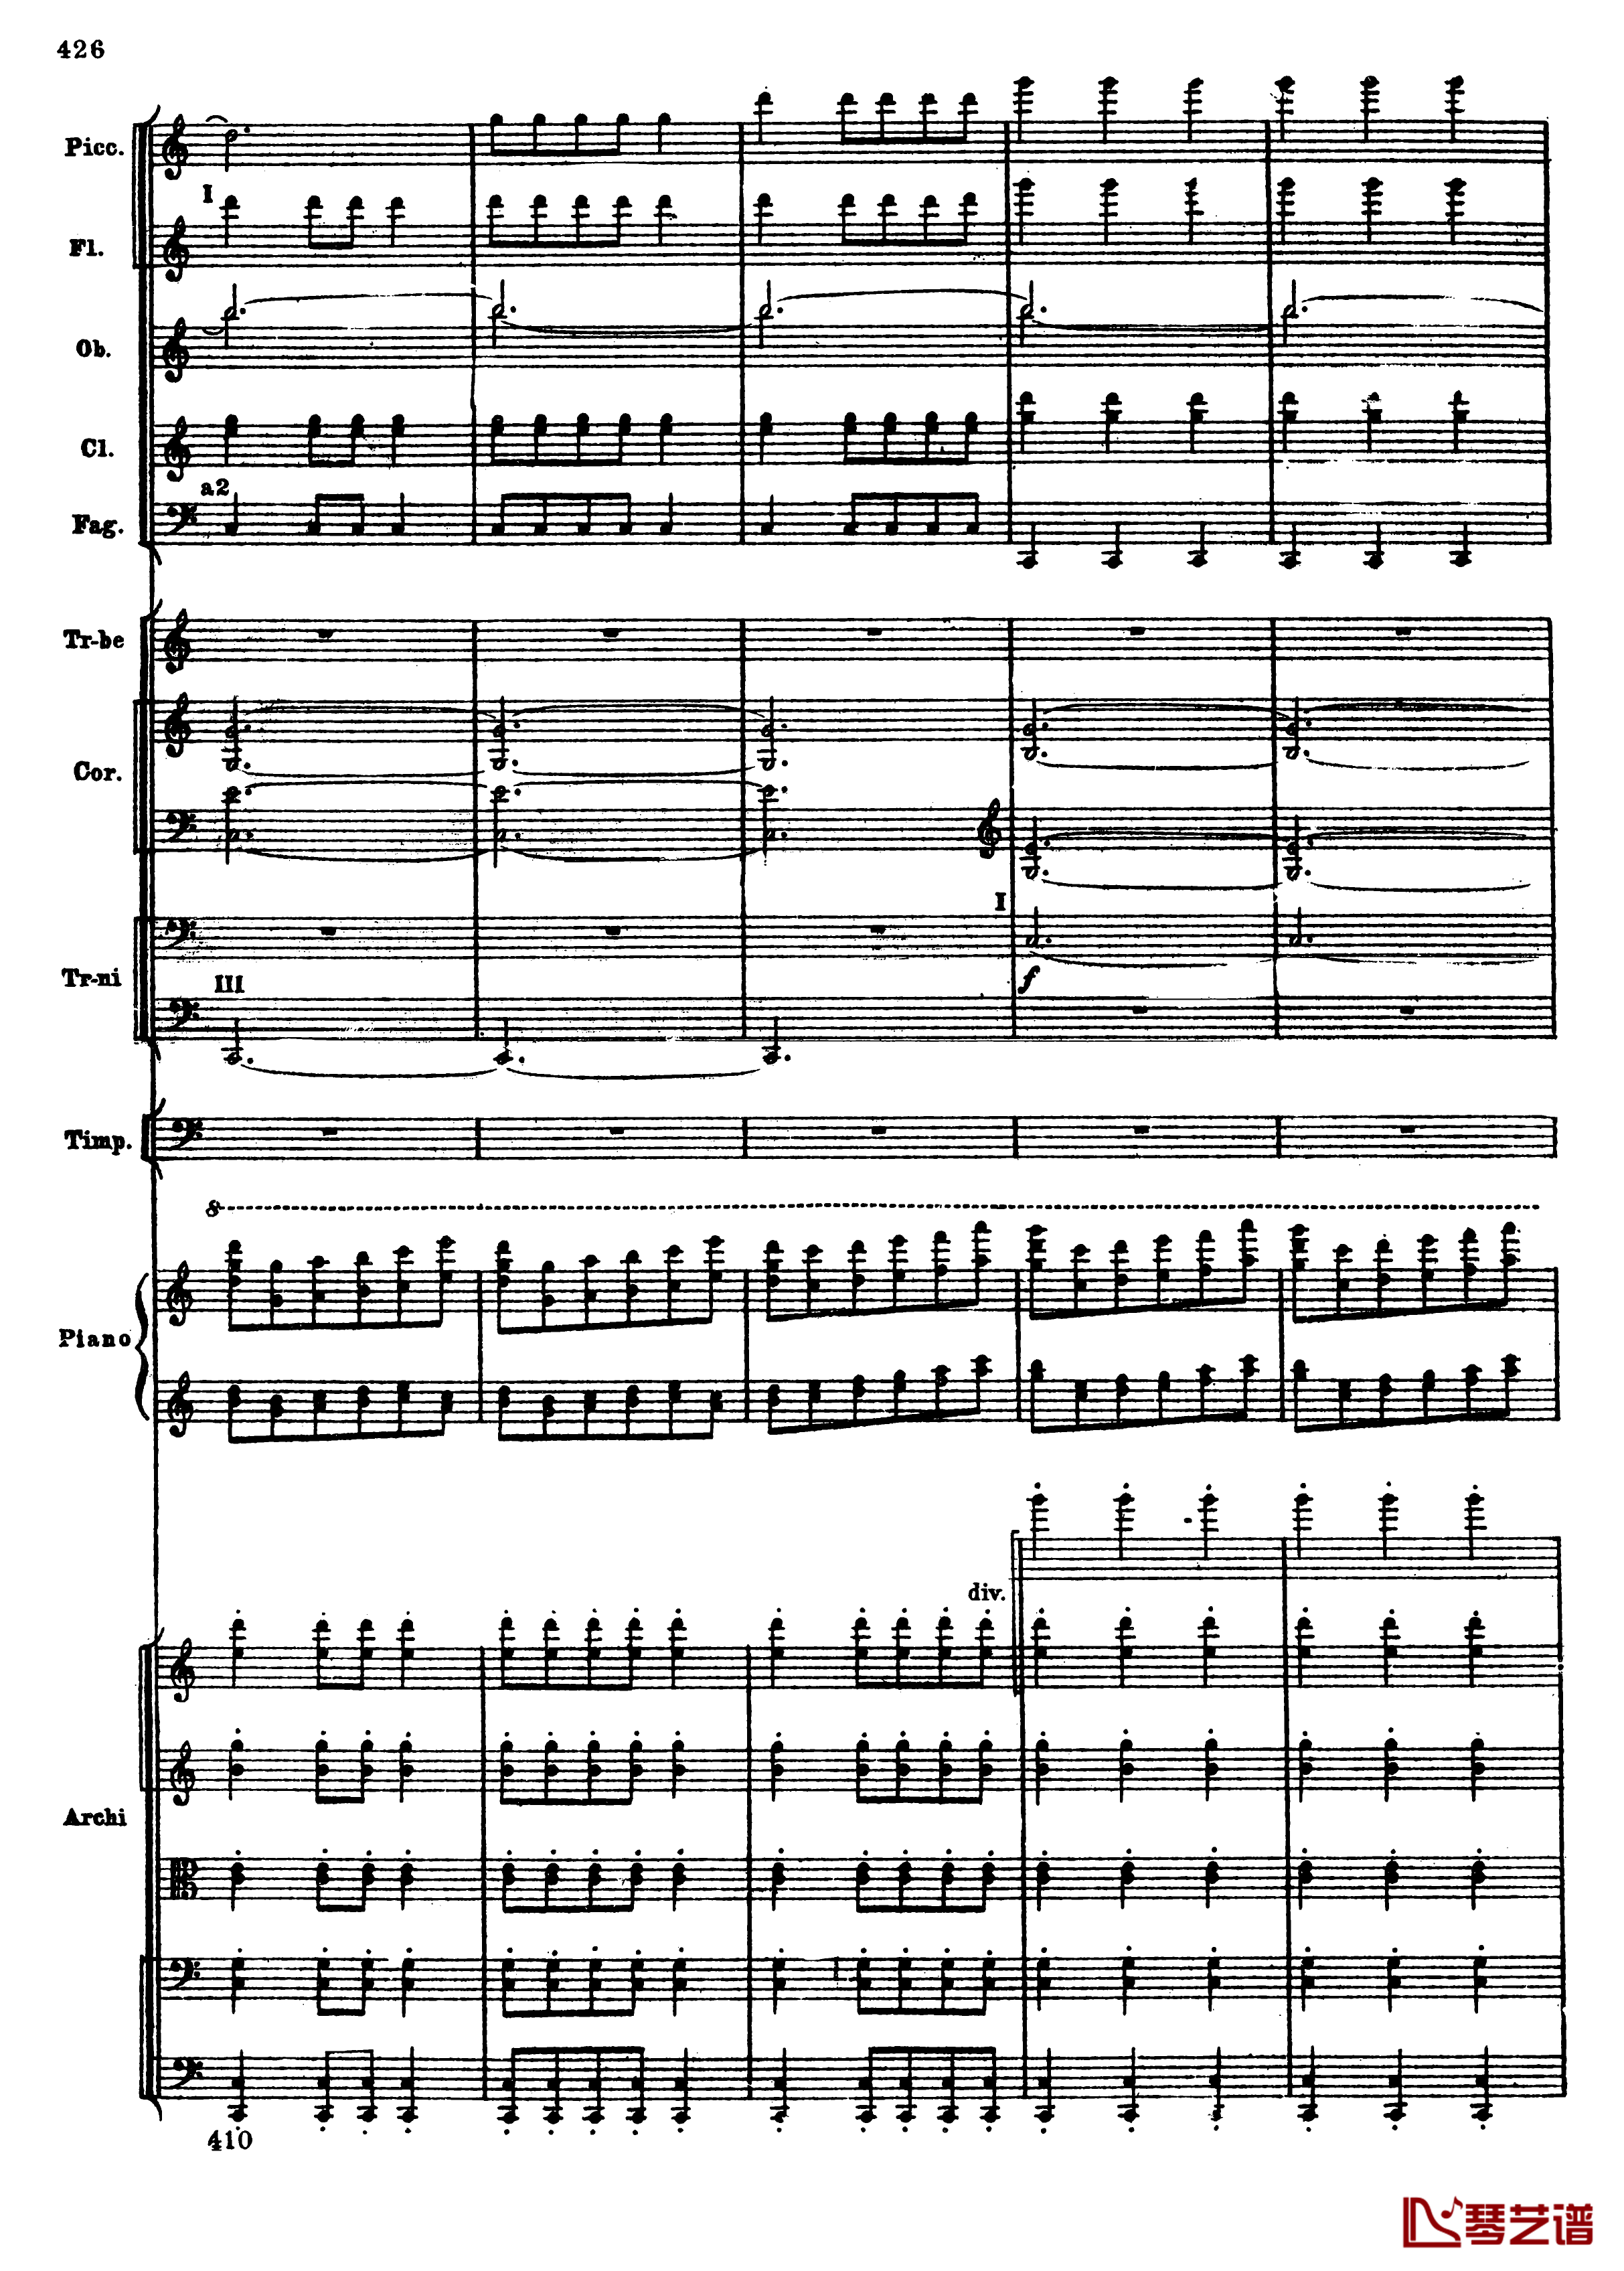 普罗科菲耶夫第三钢琴协奏曲钢琴谱-总谱-普罗科非耶夫158